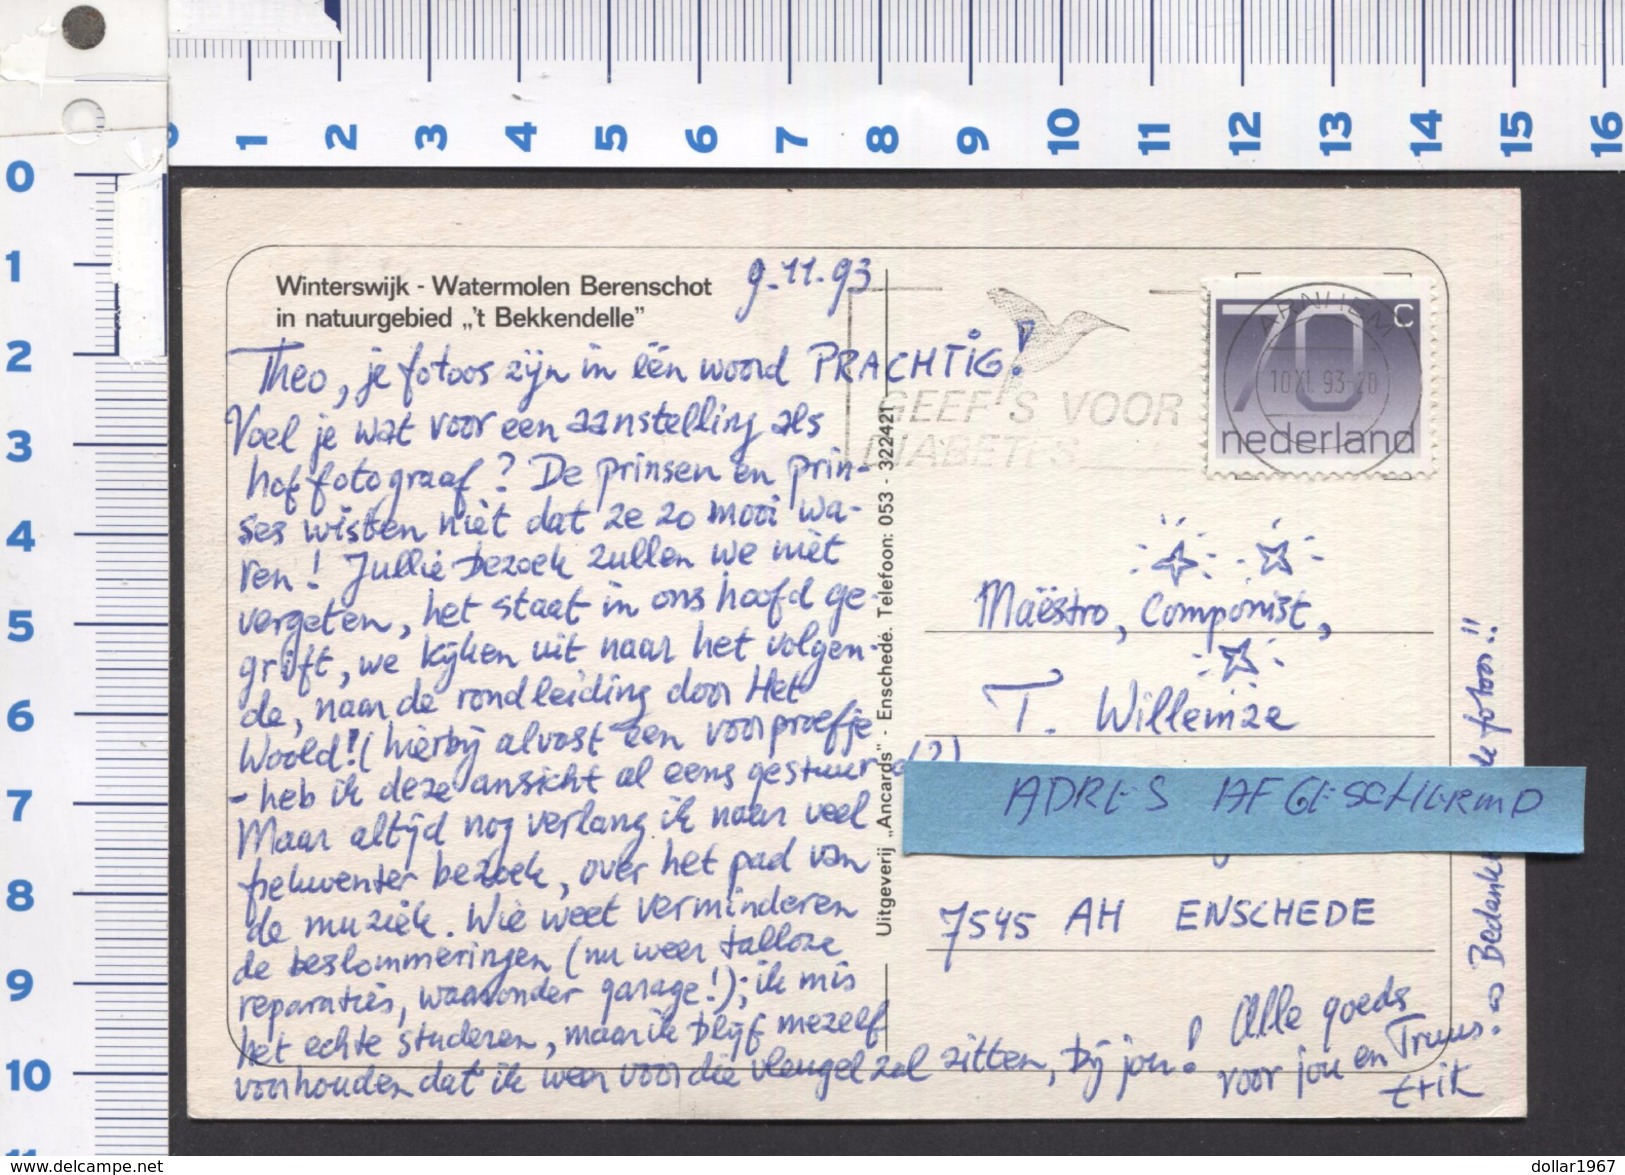 Winterswijk - Watermolen Berenschot  1993 - See The 2  Scans For Condition.( Originalscan !!! ) - Winterswijk